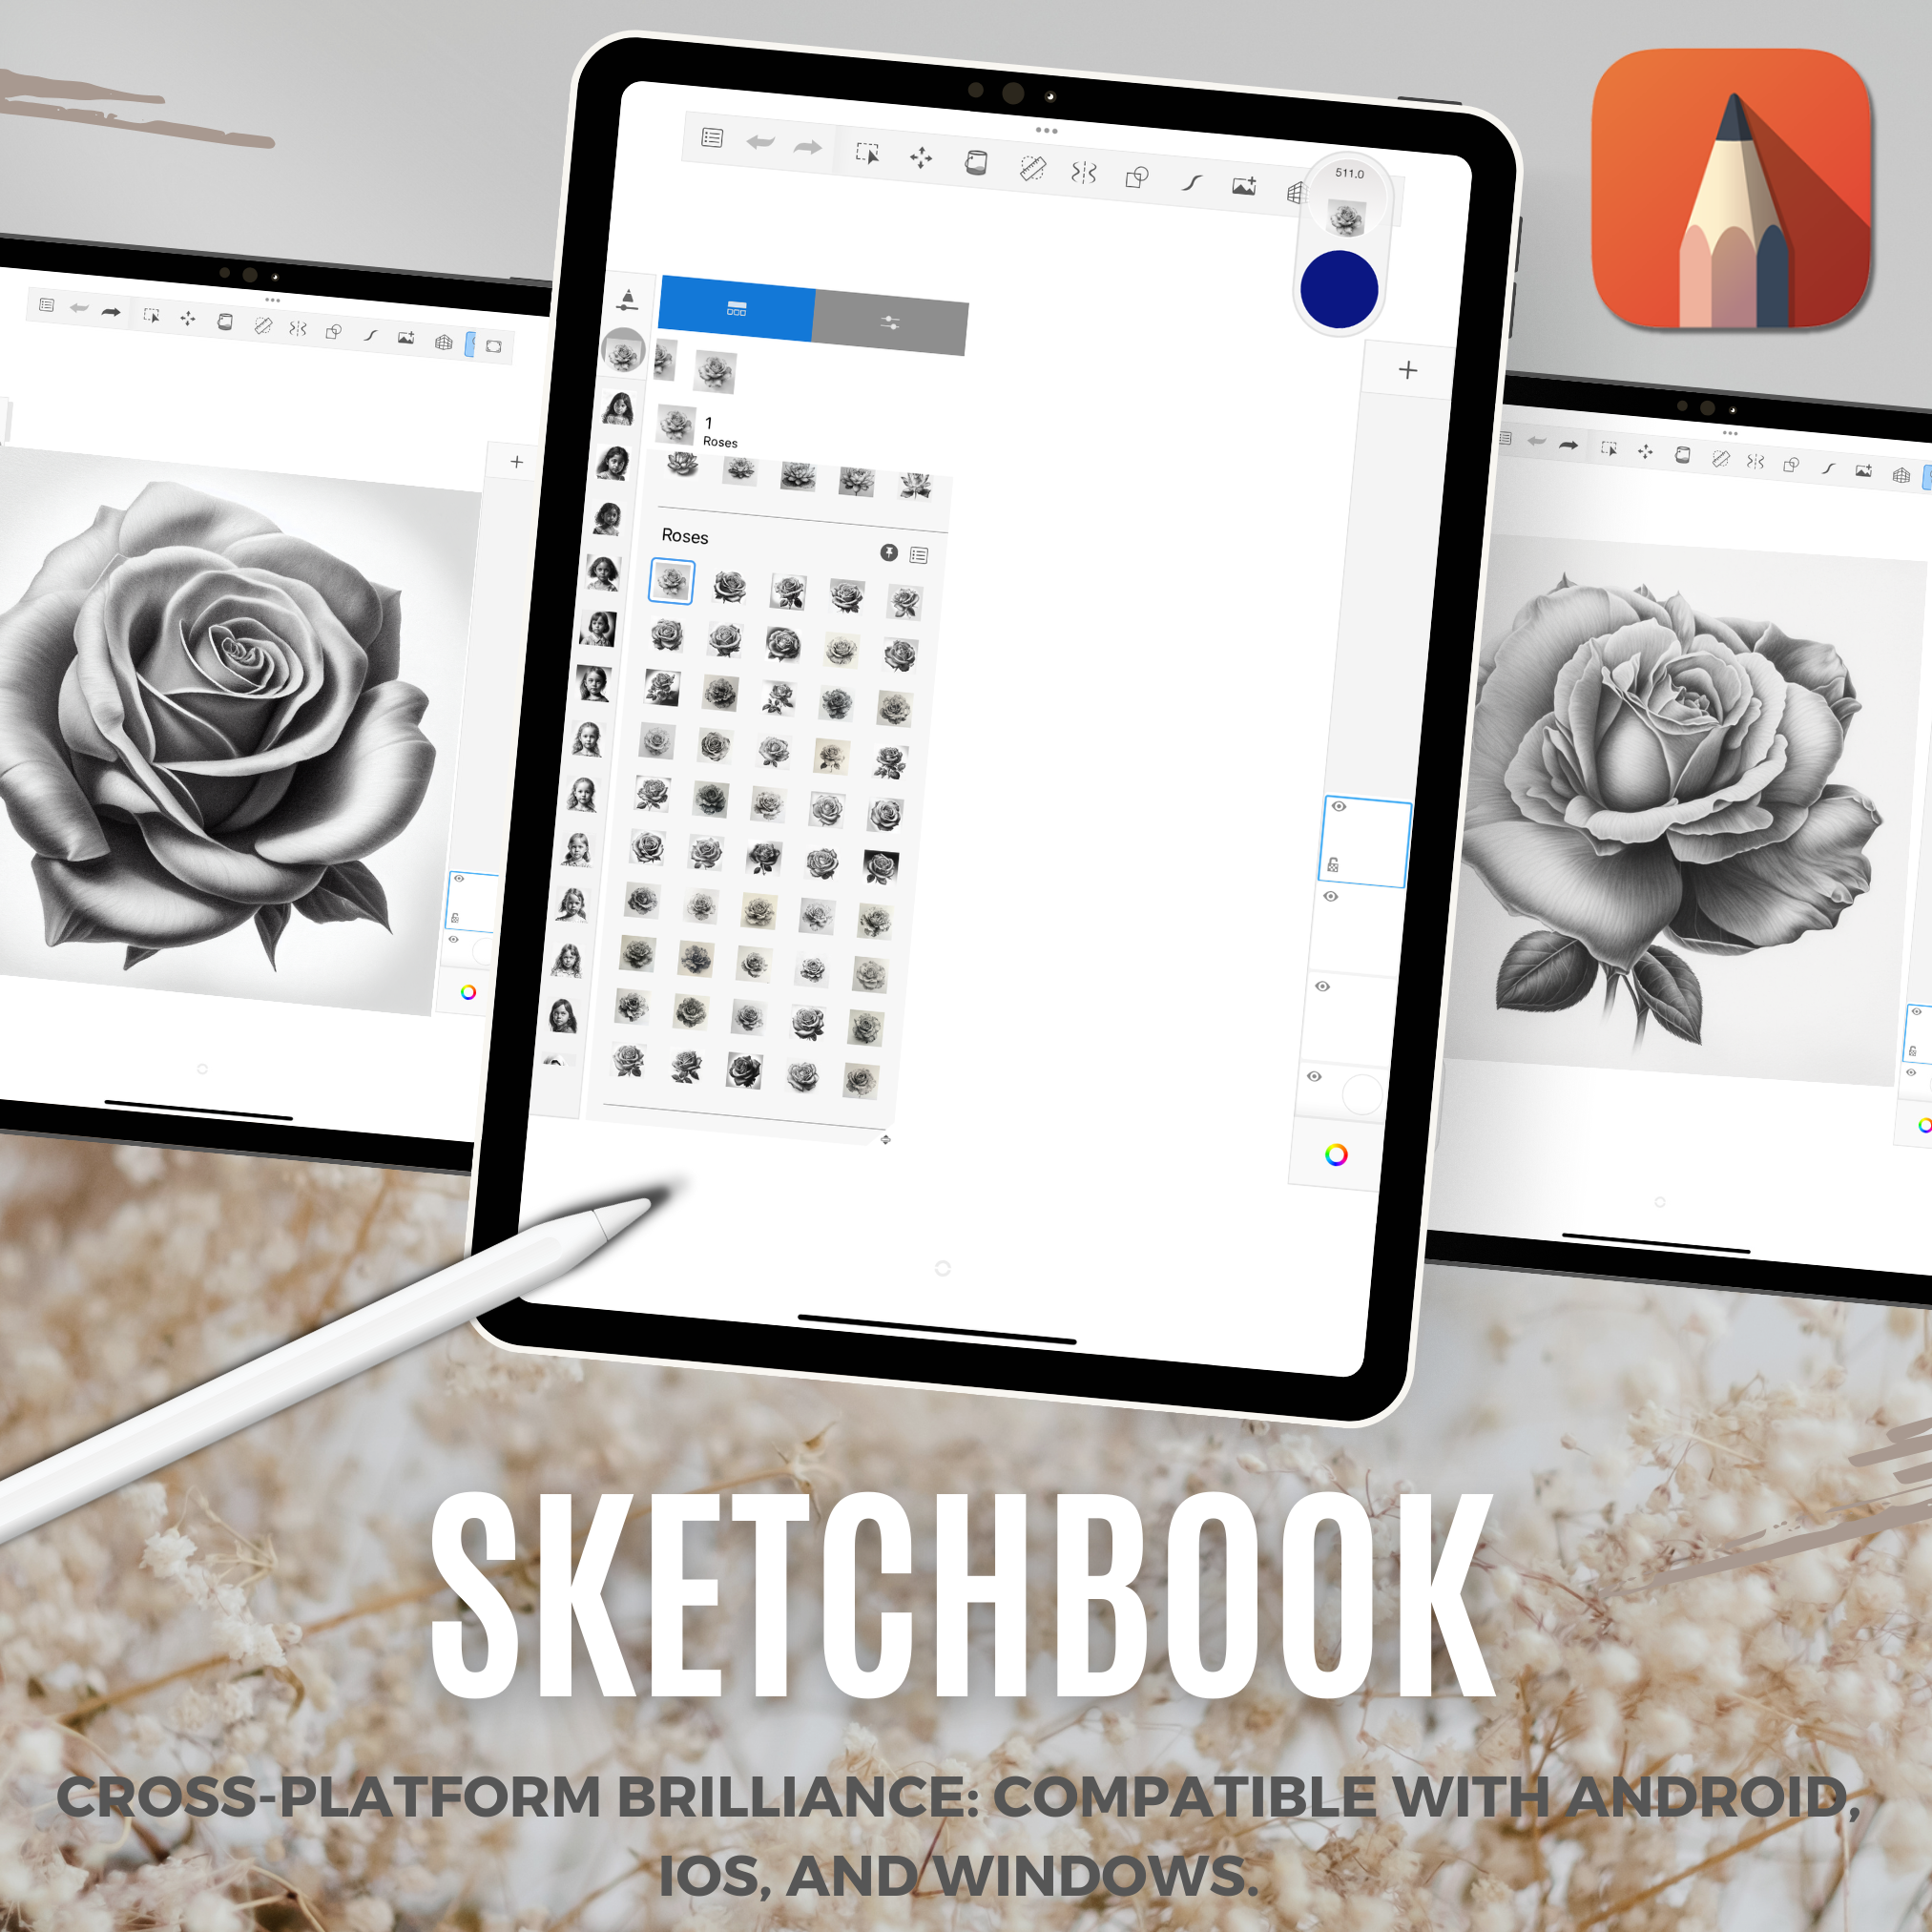 Roses Digital Design Collection: 50 Procreate & Sketchbook Images